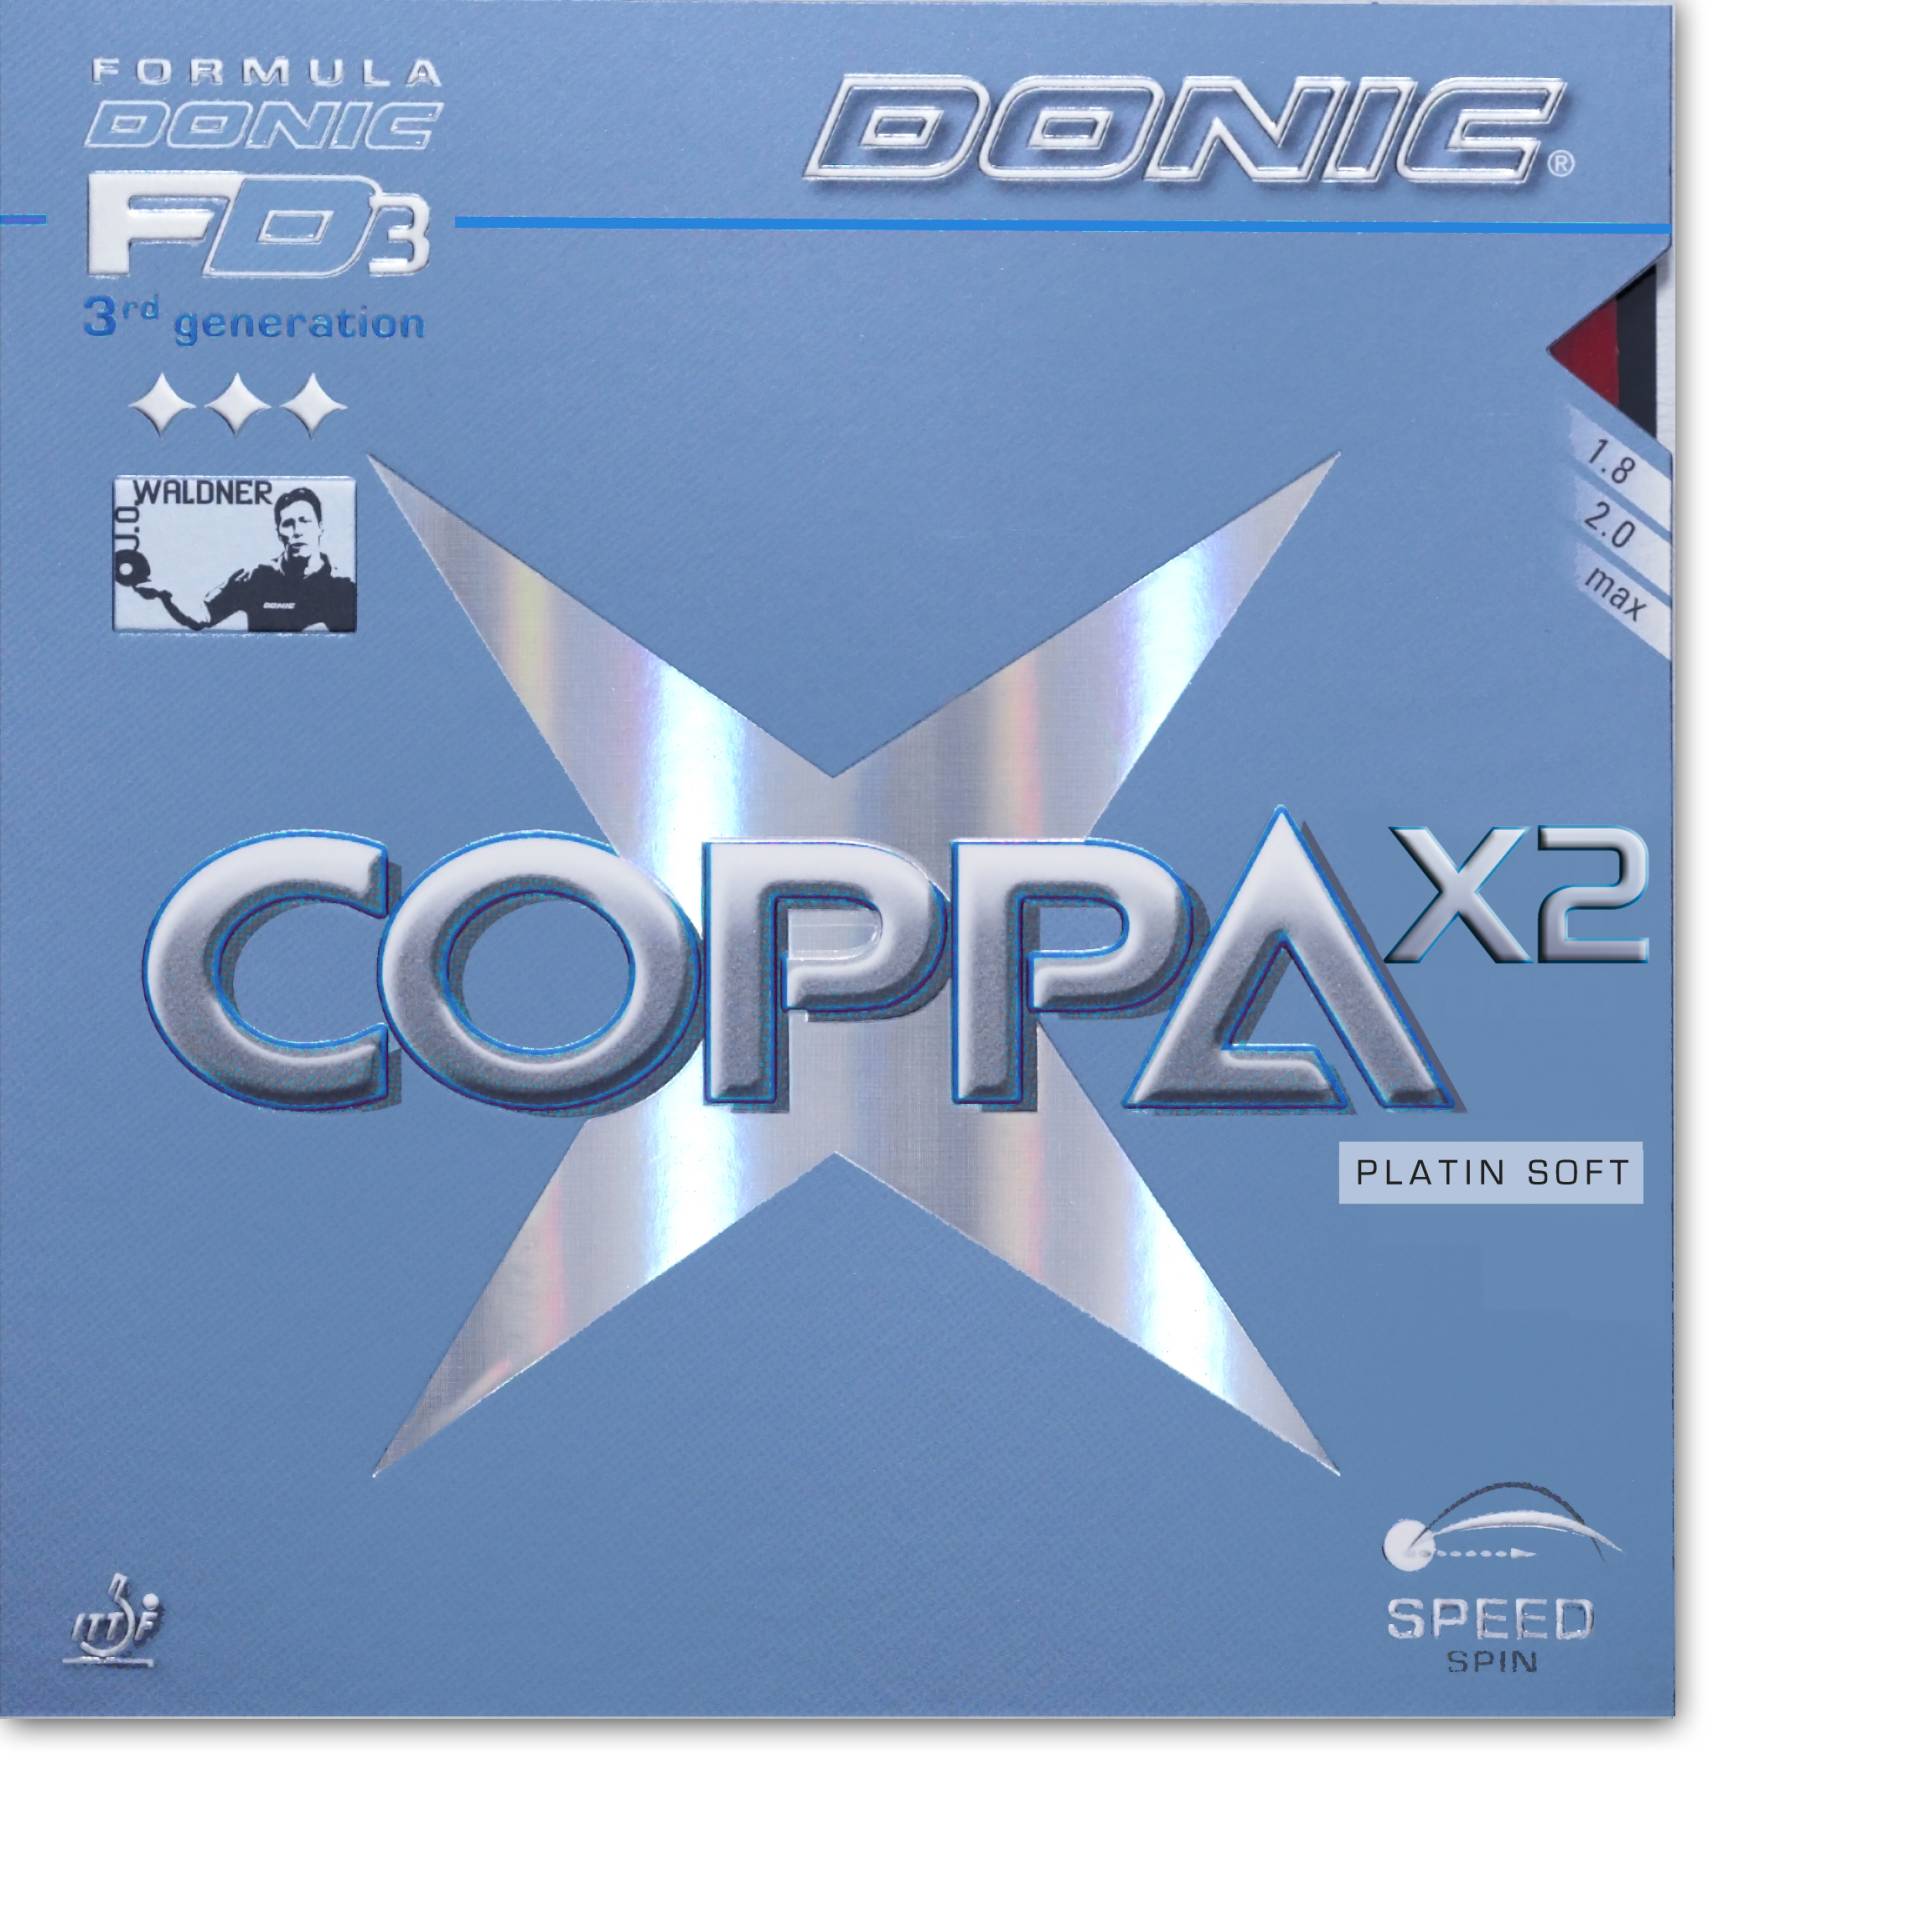 Donic Coppa X2 Platin Soft - Tischtennis Belag von Donic